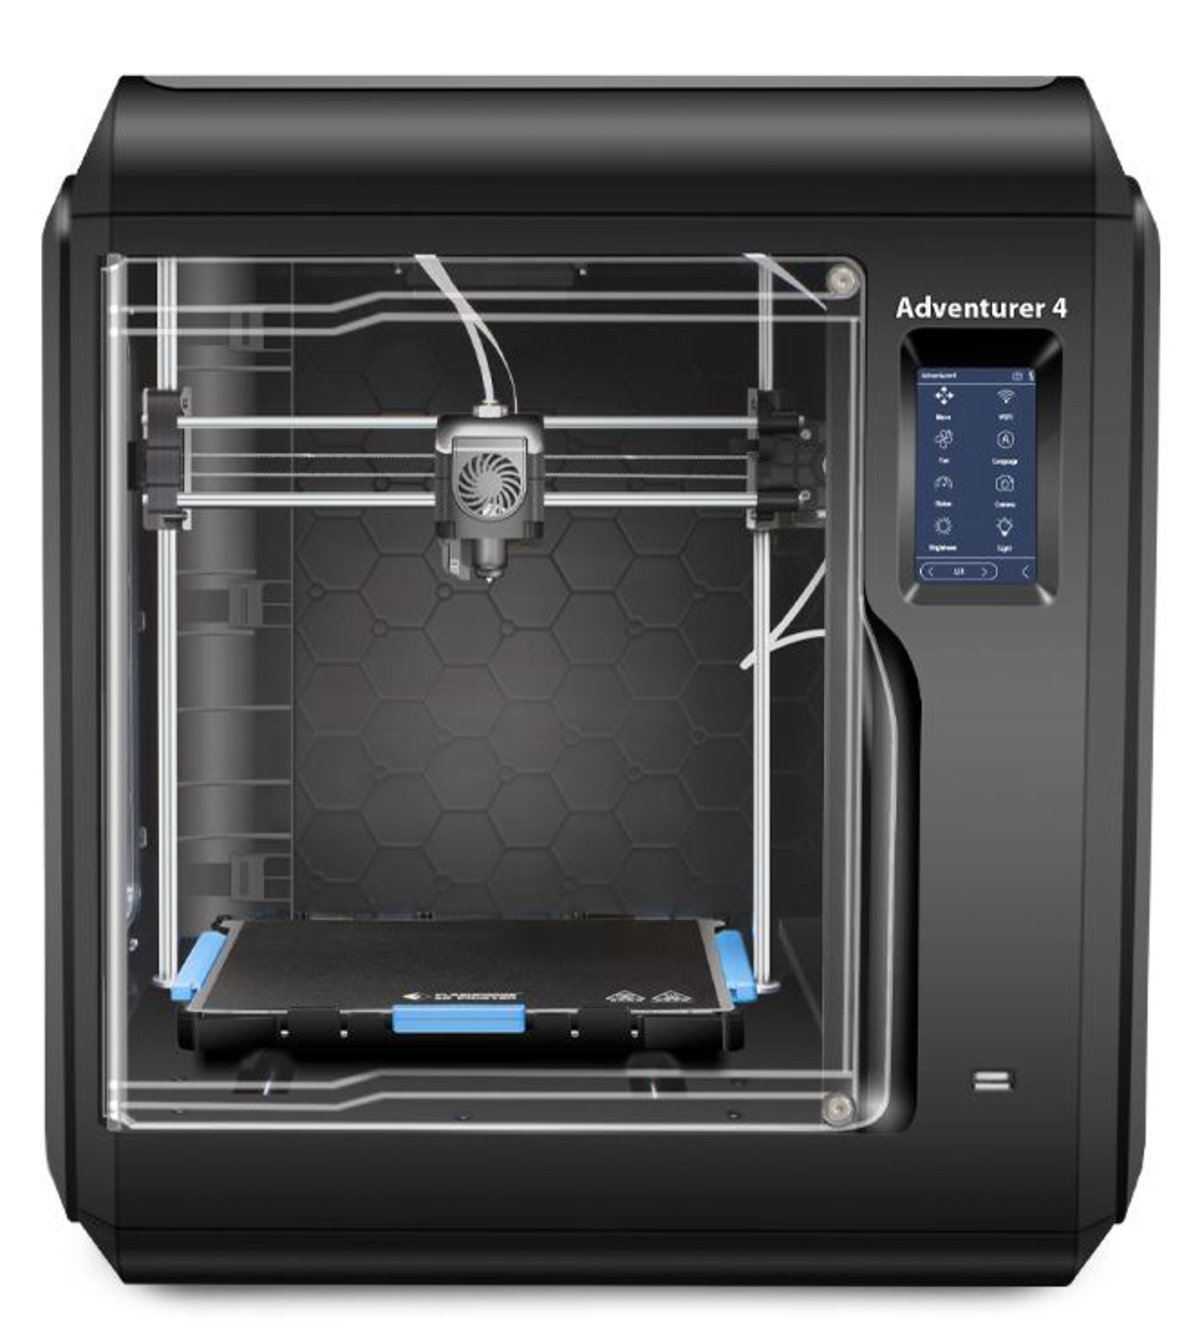 FLASCHFORGE Adventurer 4 3D 3D printer Drucker FDM